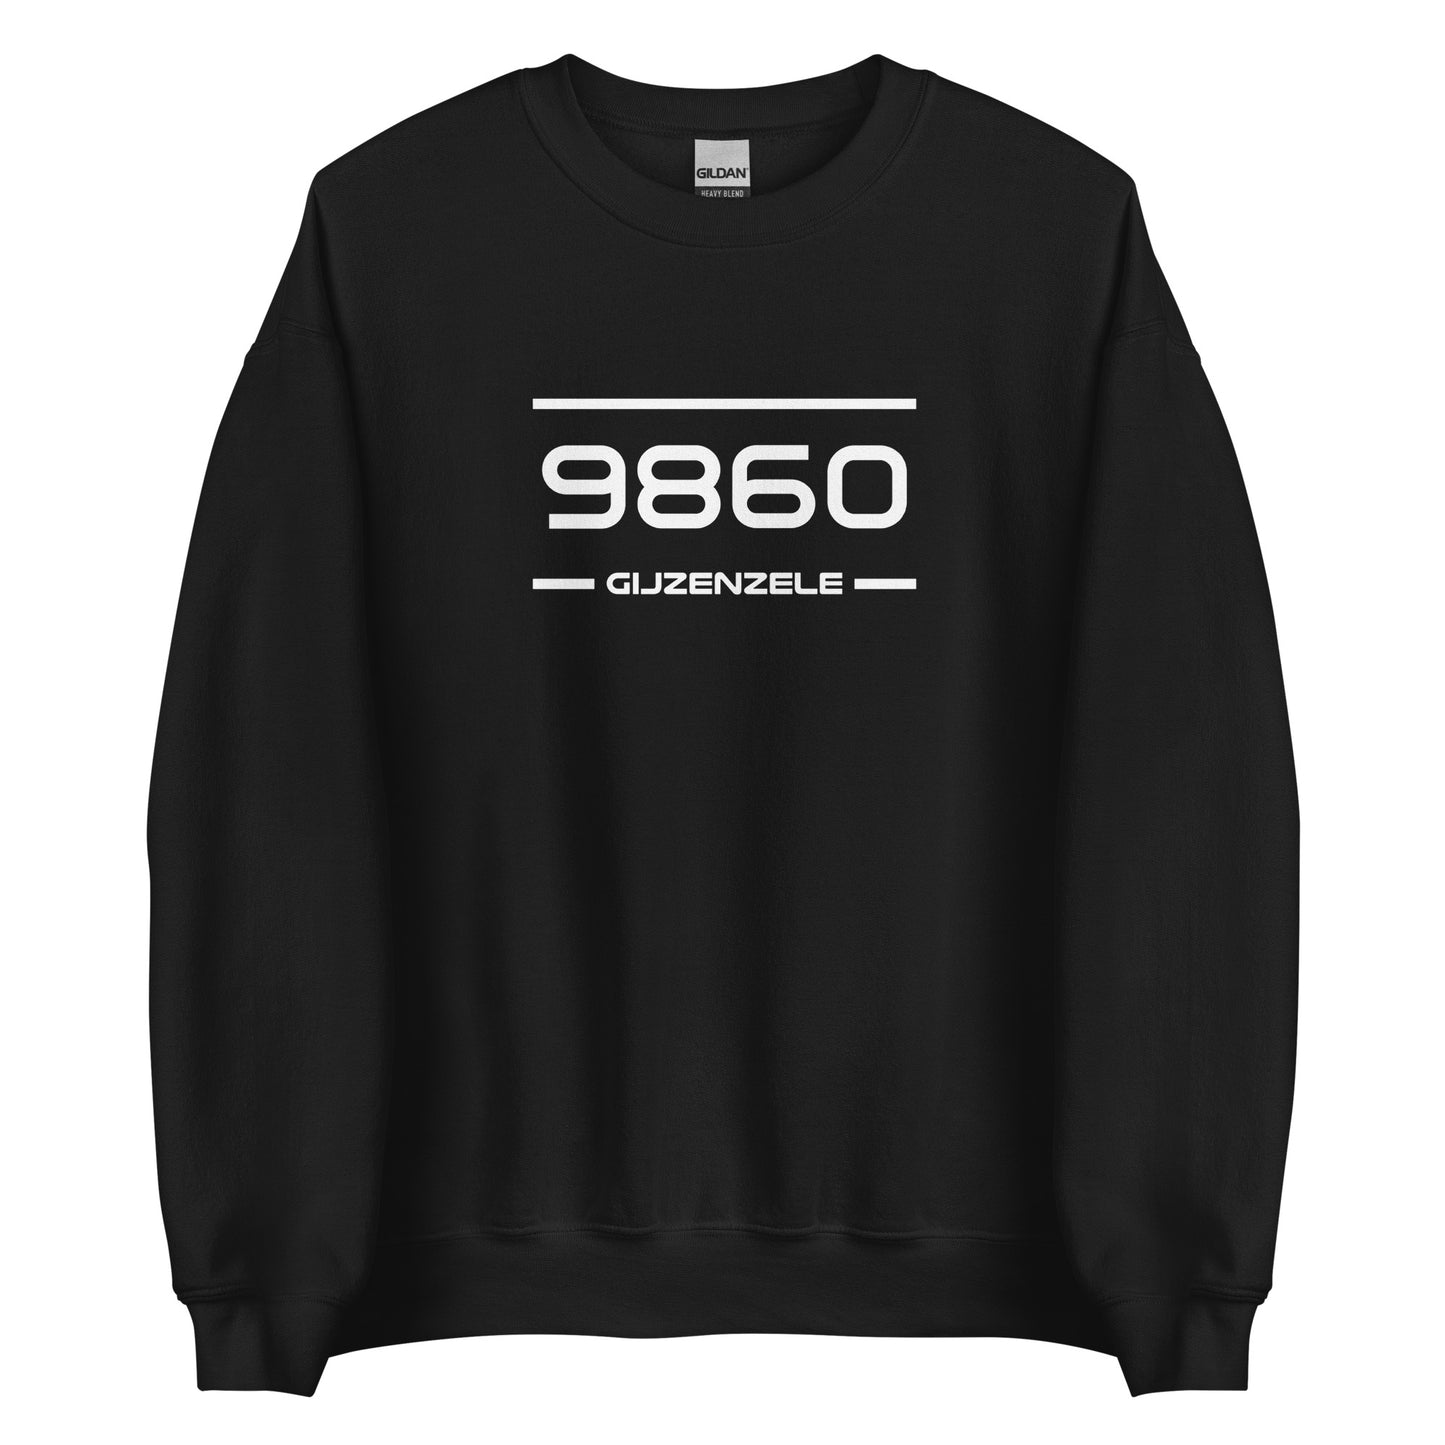 Sweater - 9860 - Gijzenzele (M/V)